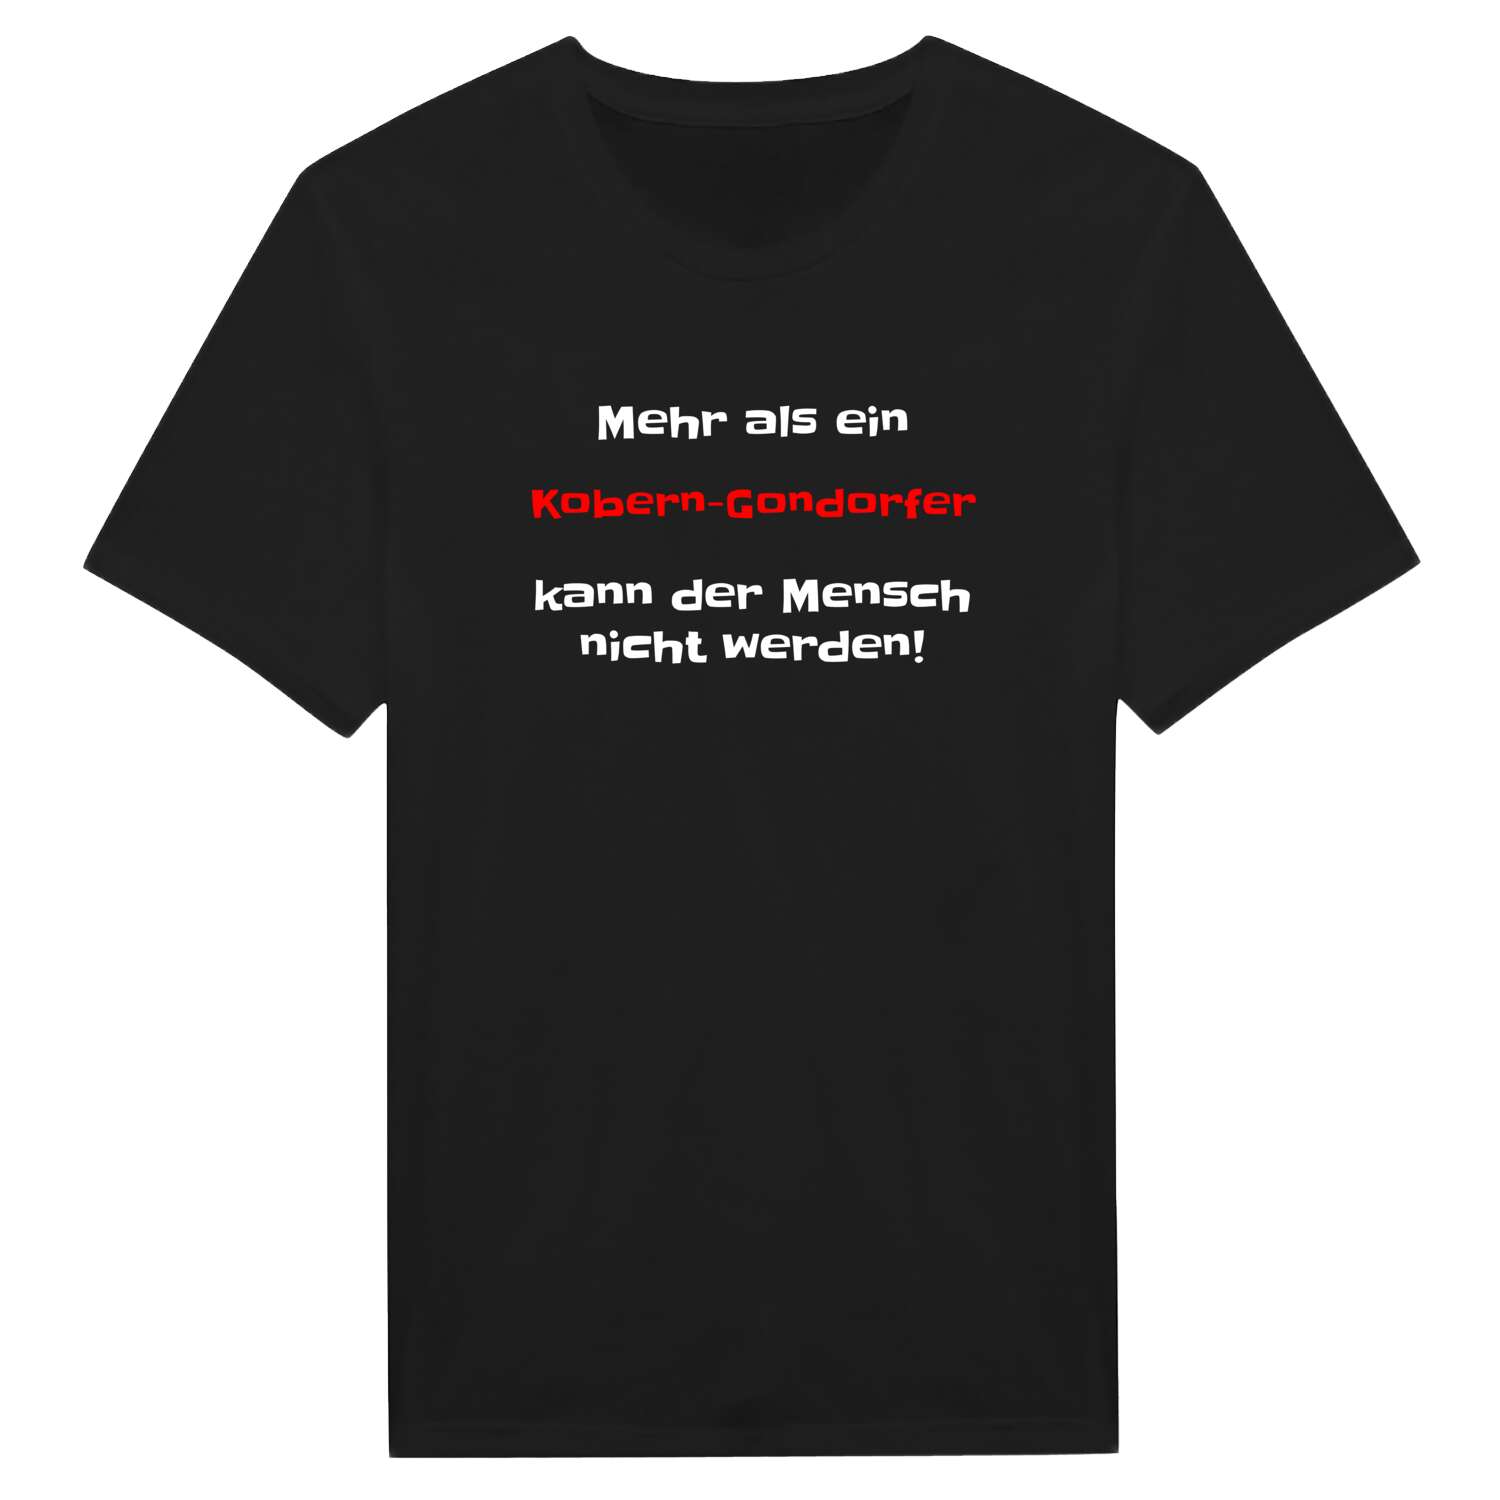 Kobern-Gondorf T-Shirt »Mehr als ein«